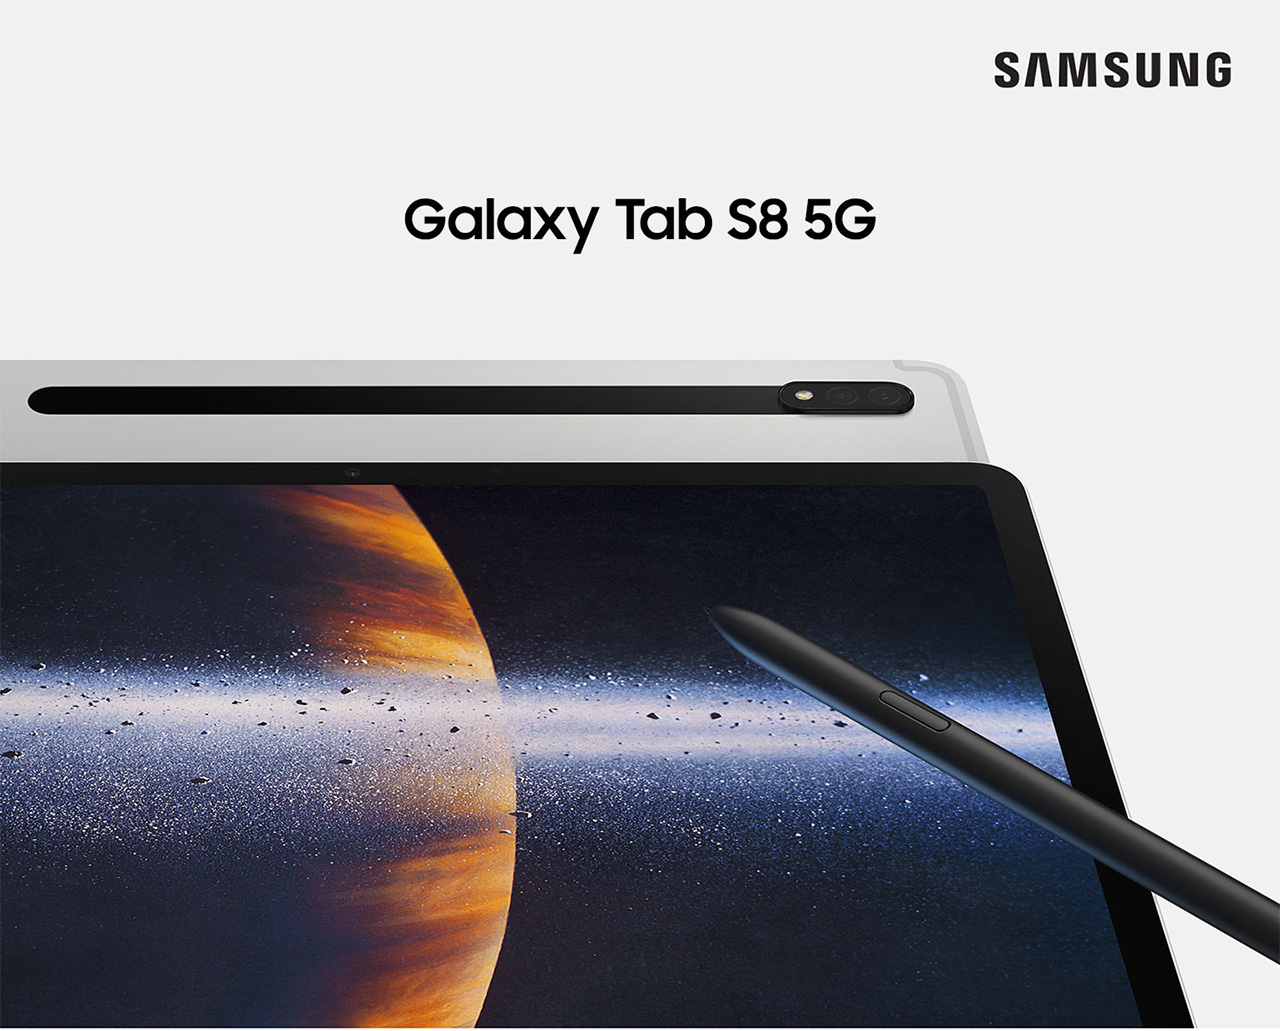 The Samsung Galaxy Tab S8 5G